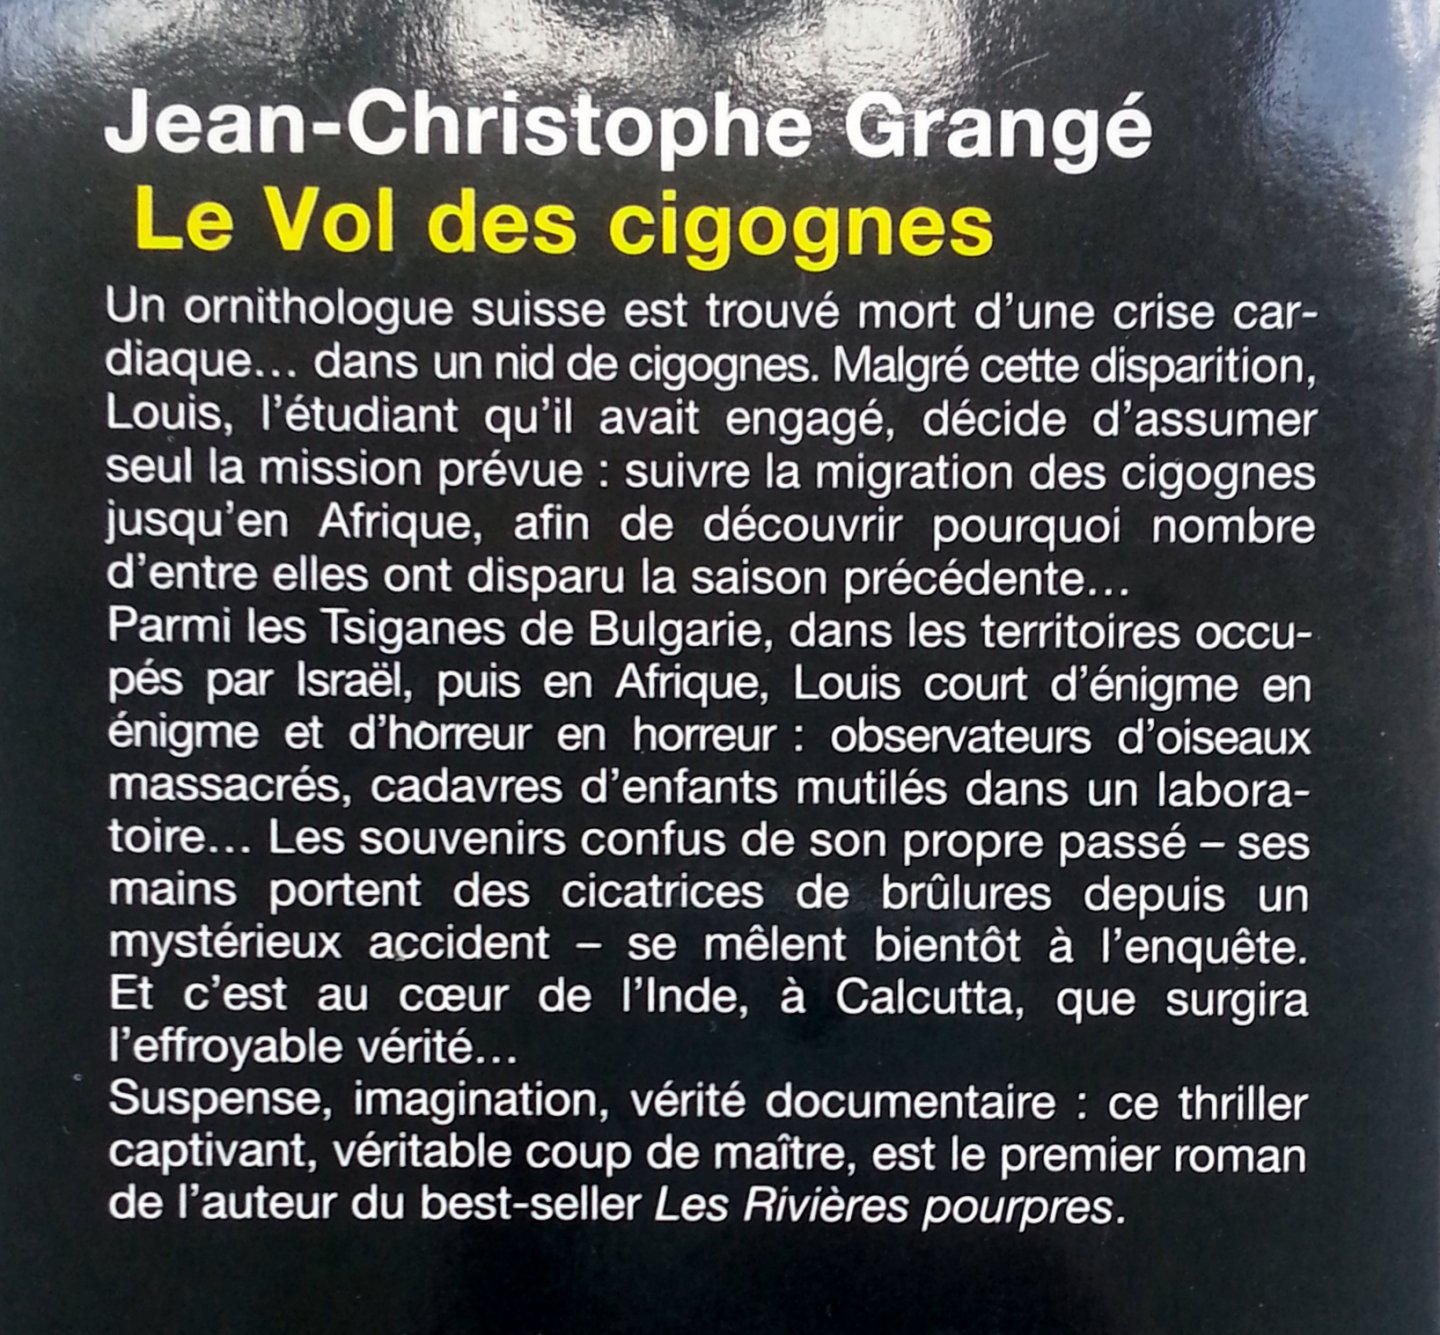 Grangé, Jean-Christophe - Le vol des cigognes (FRANSTALIG)